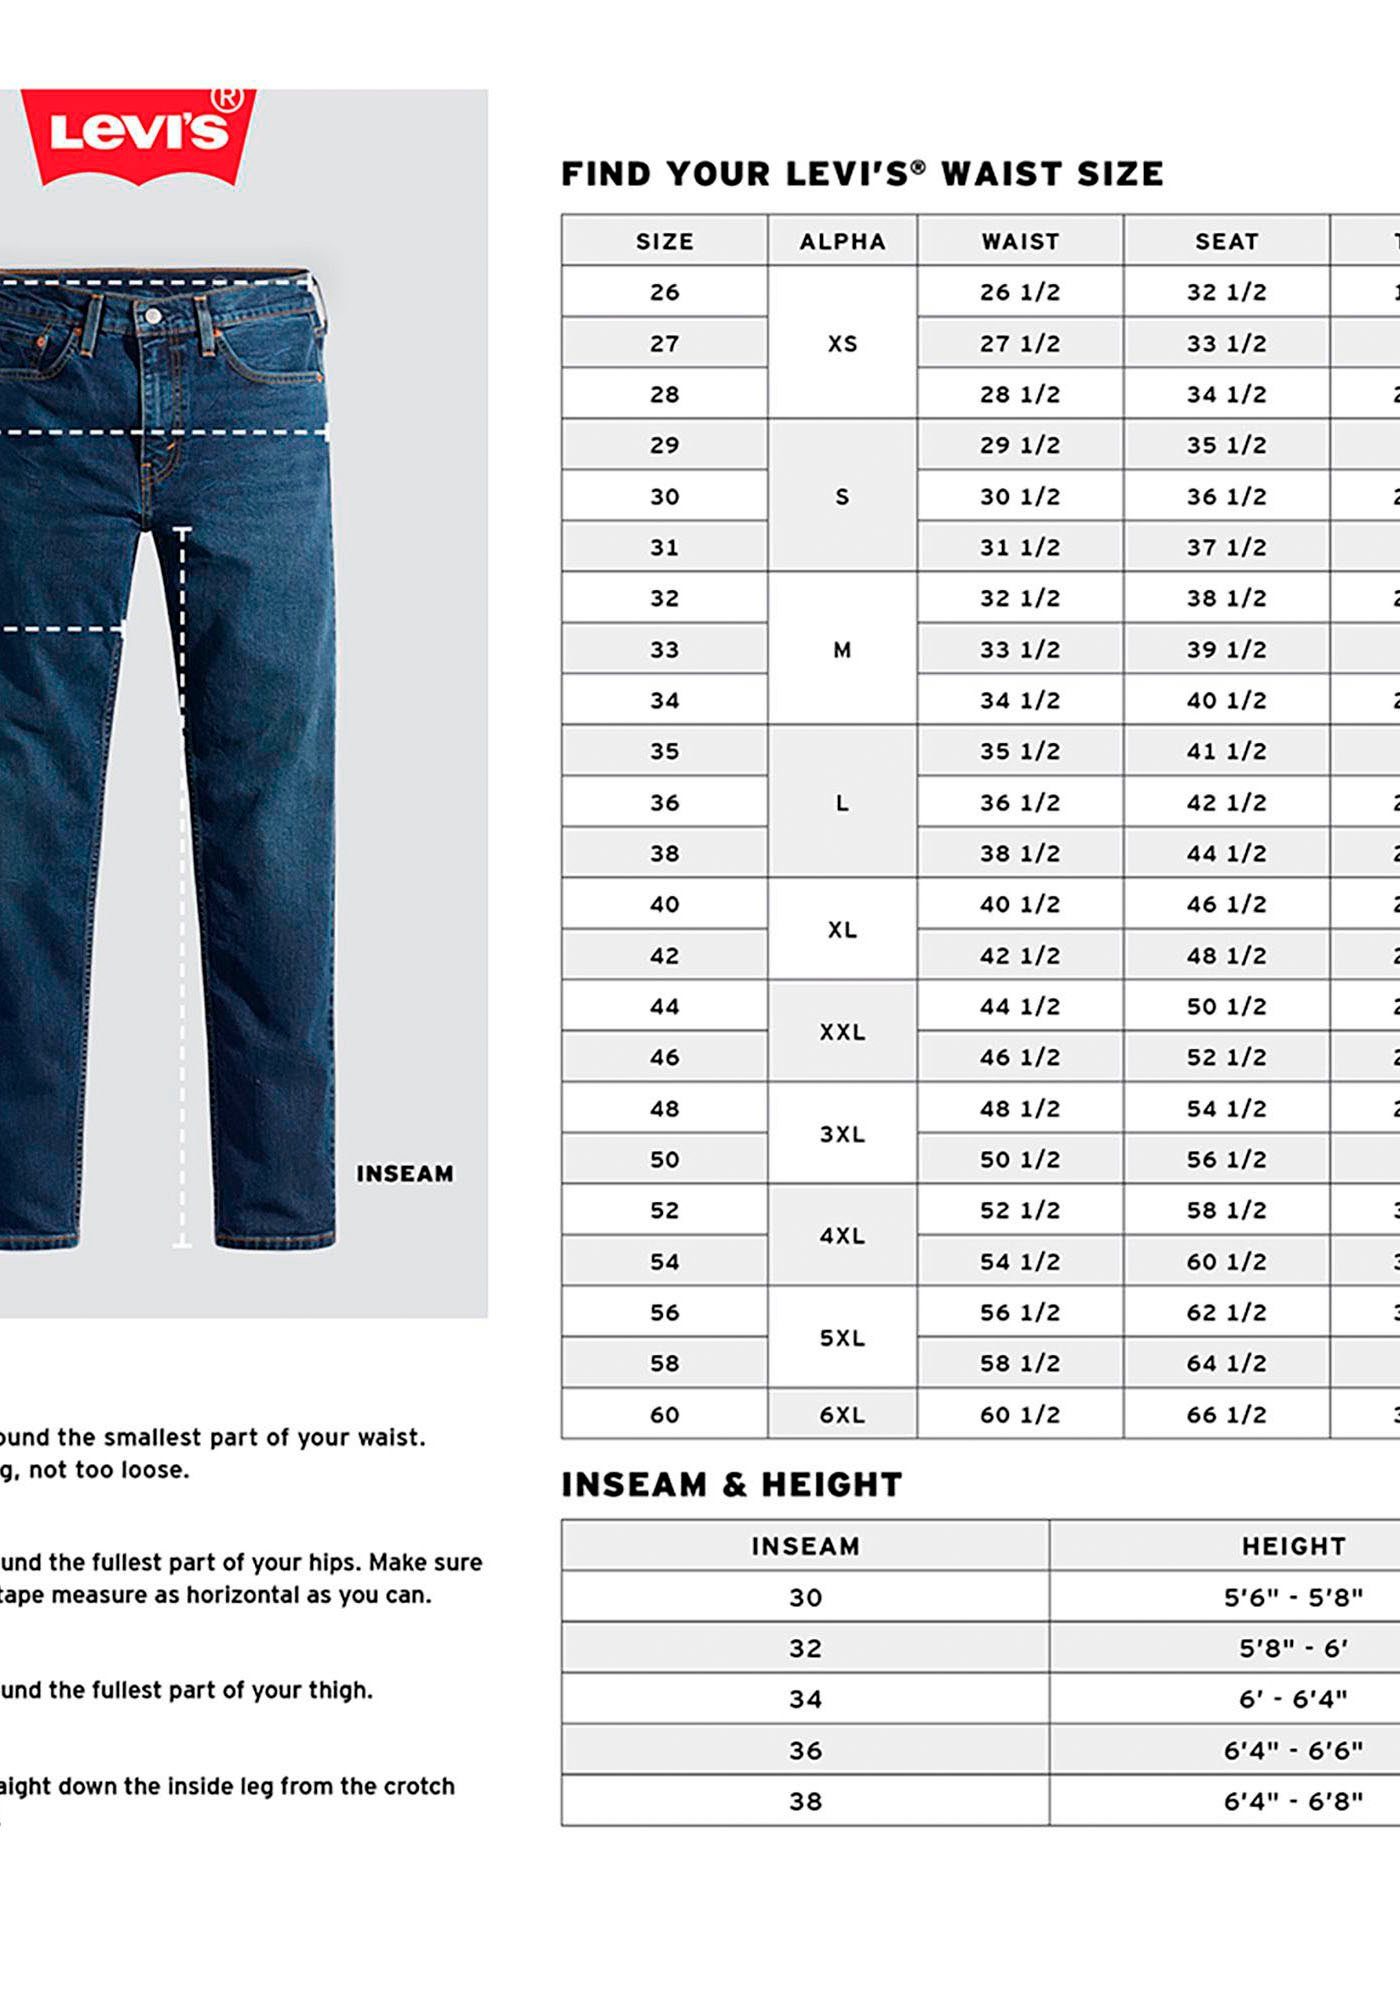 KEEPIN CLEAN Markenlabel 512 Slim Levi's® mit IT Tapered-fit-Jeans Fit Taper